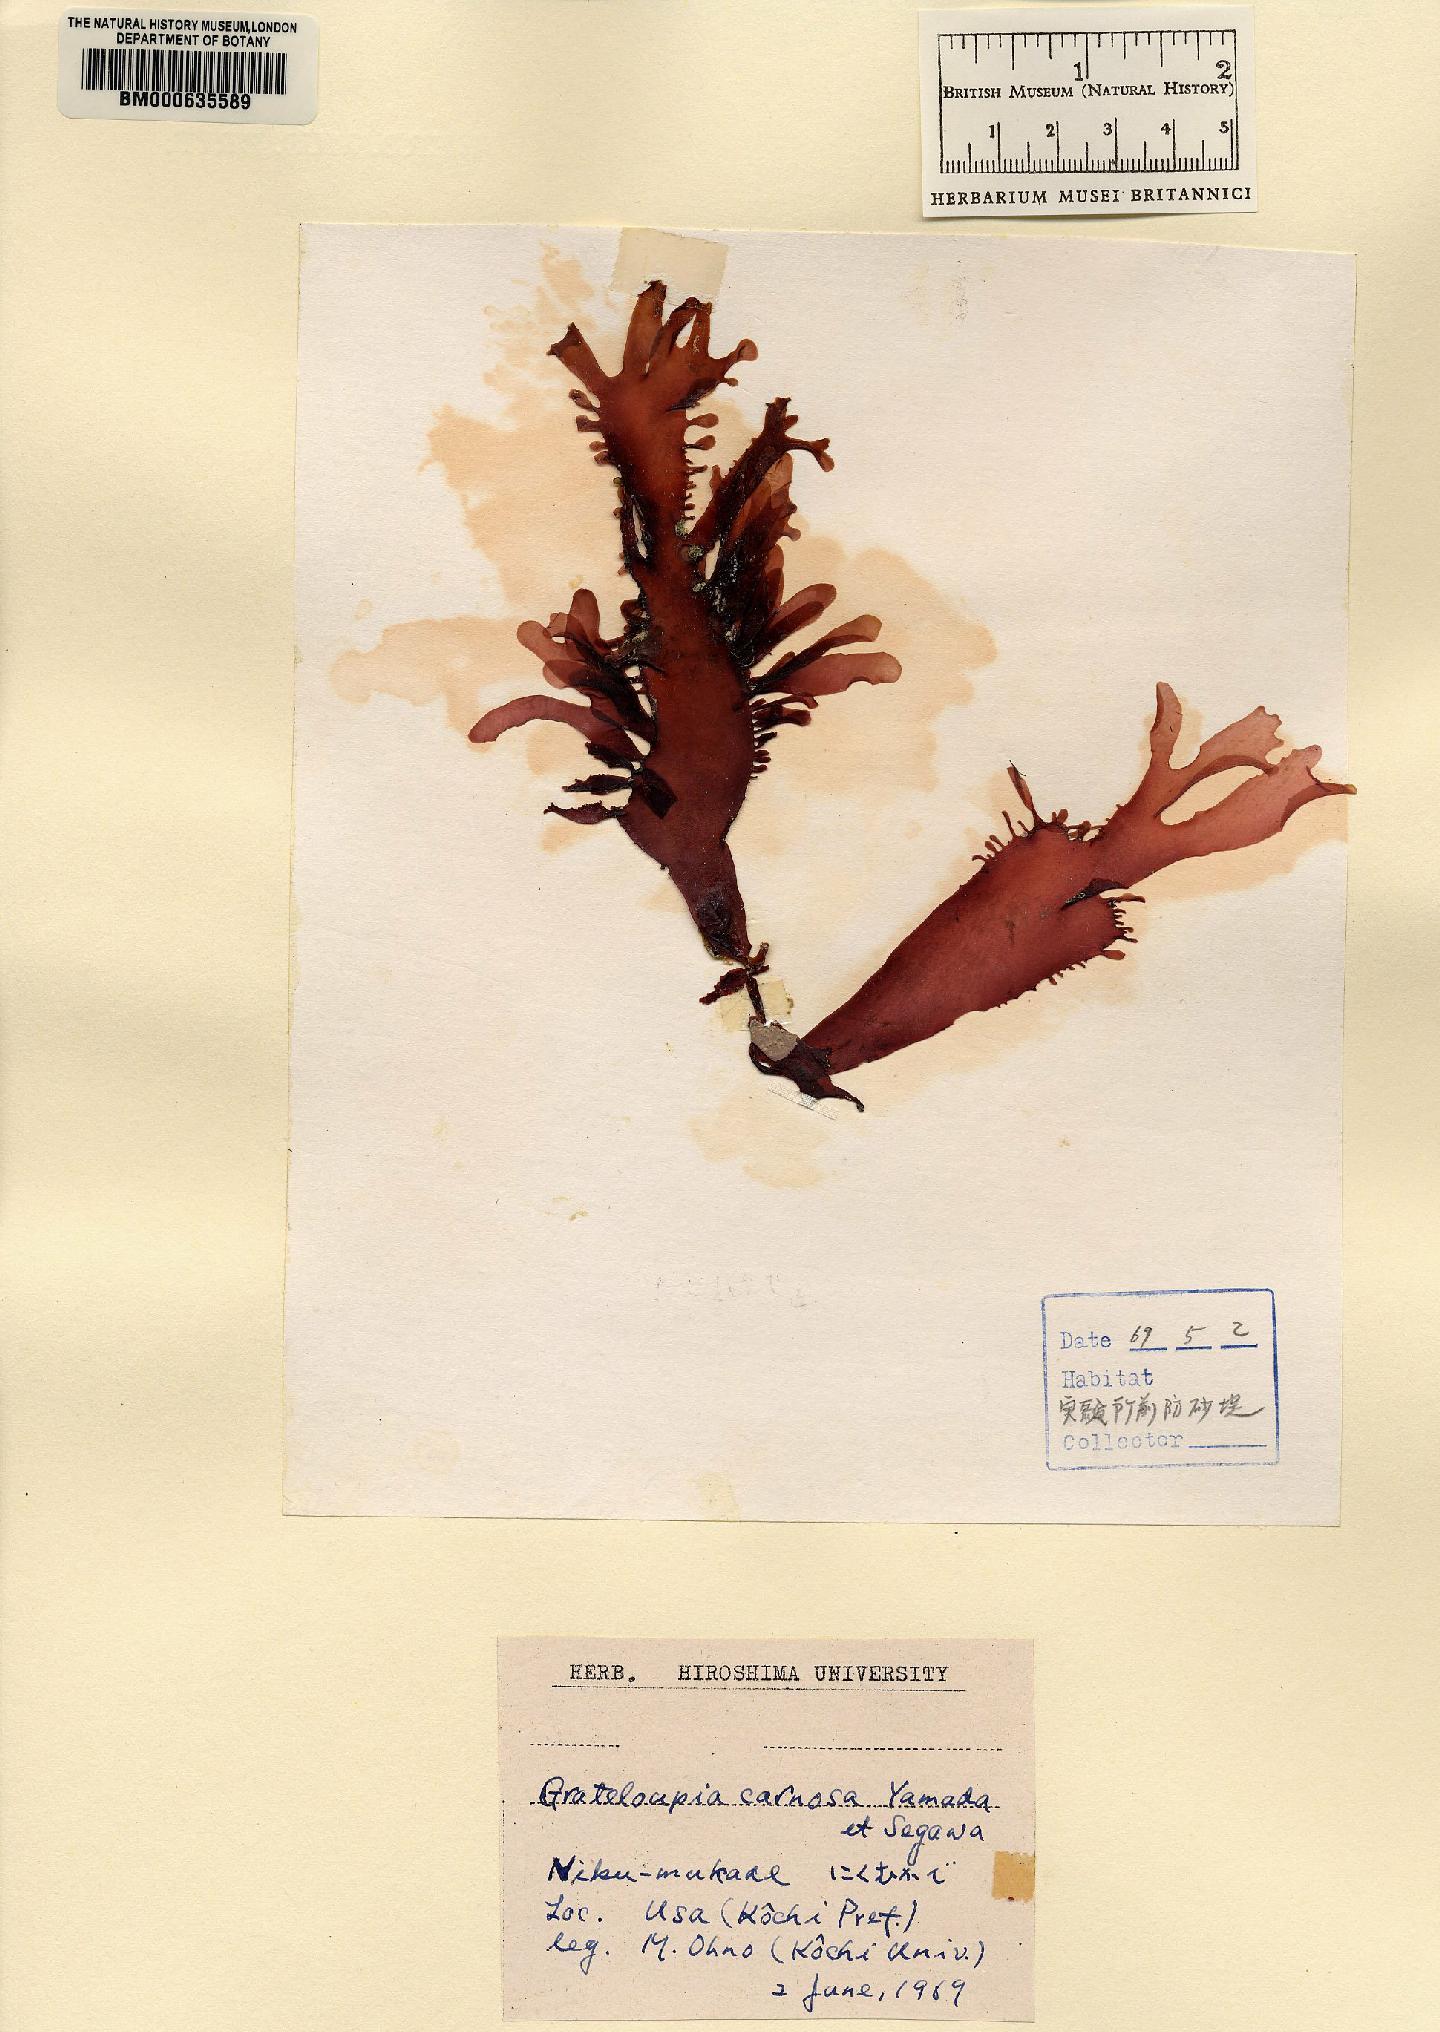 To NHMUK collection (Grateloupia carnosa Yamada & Segawa; NHMUK:ecatalogue:4857416)